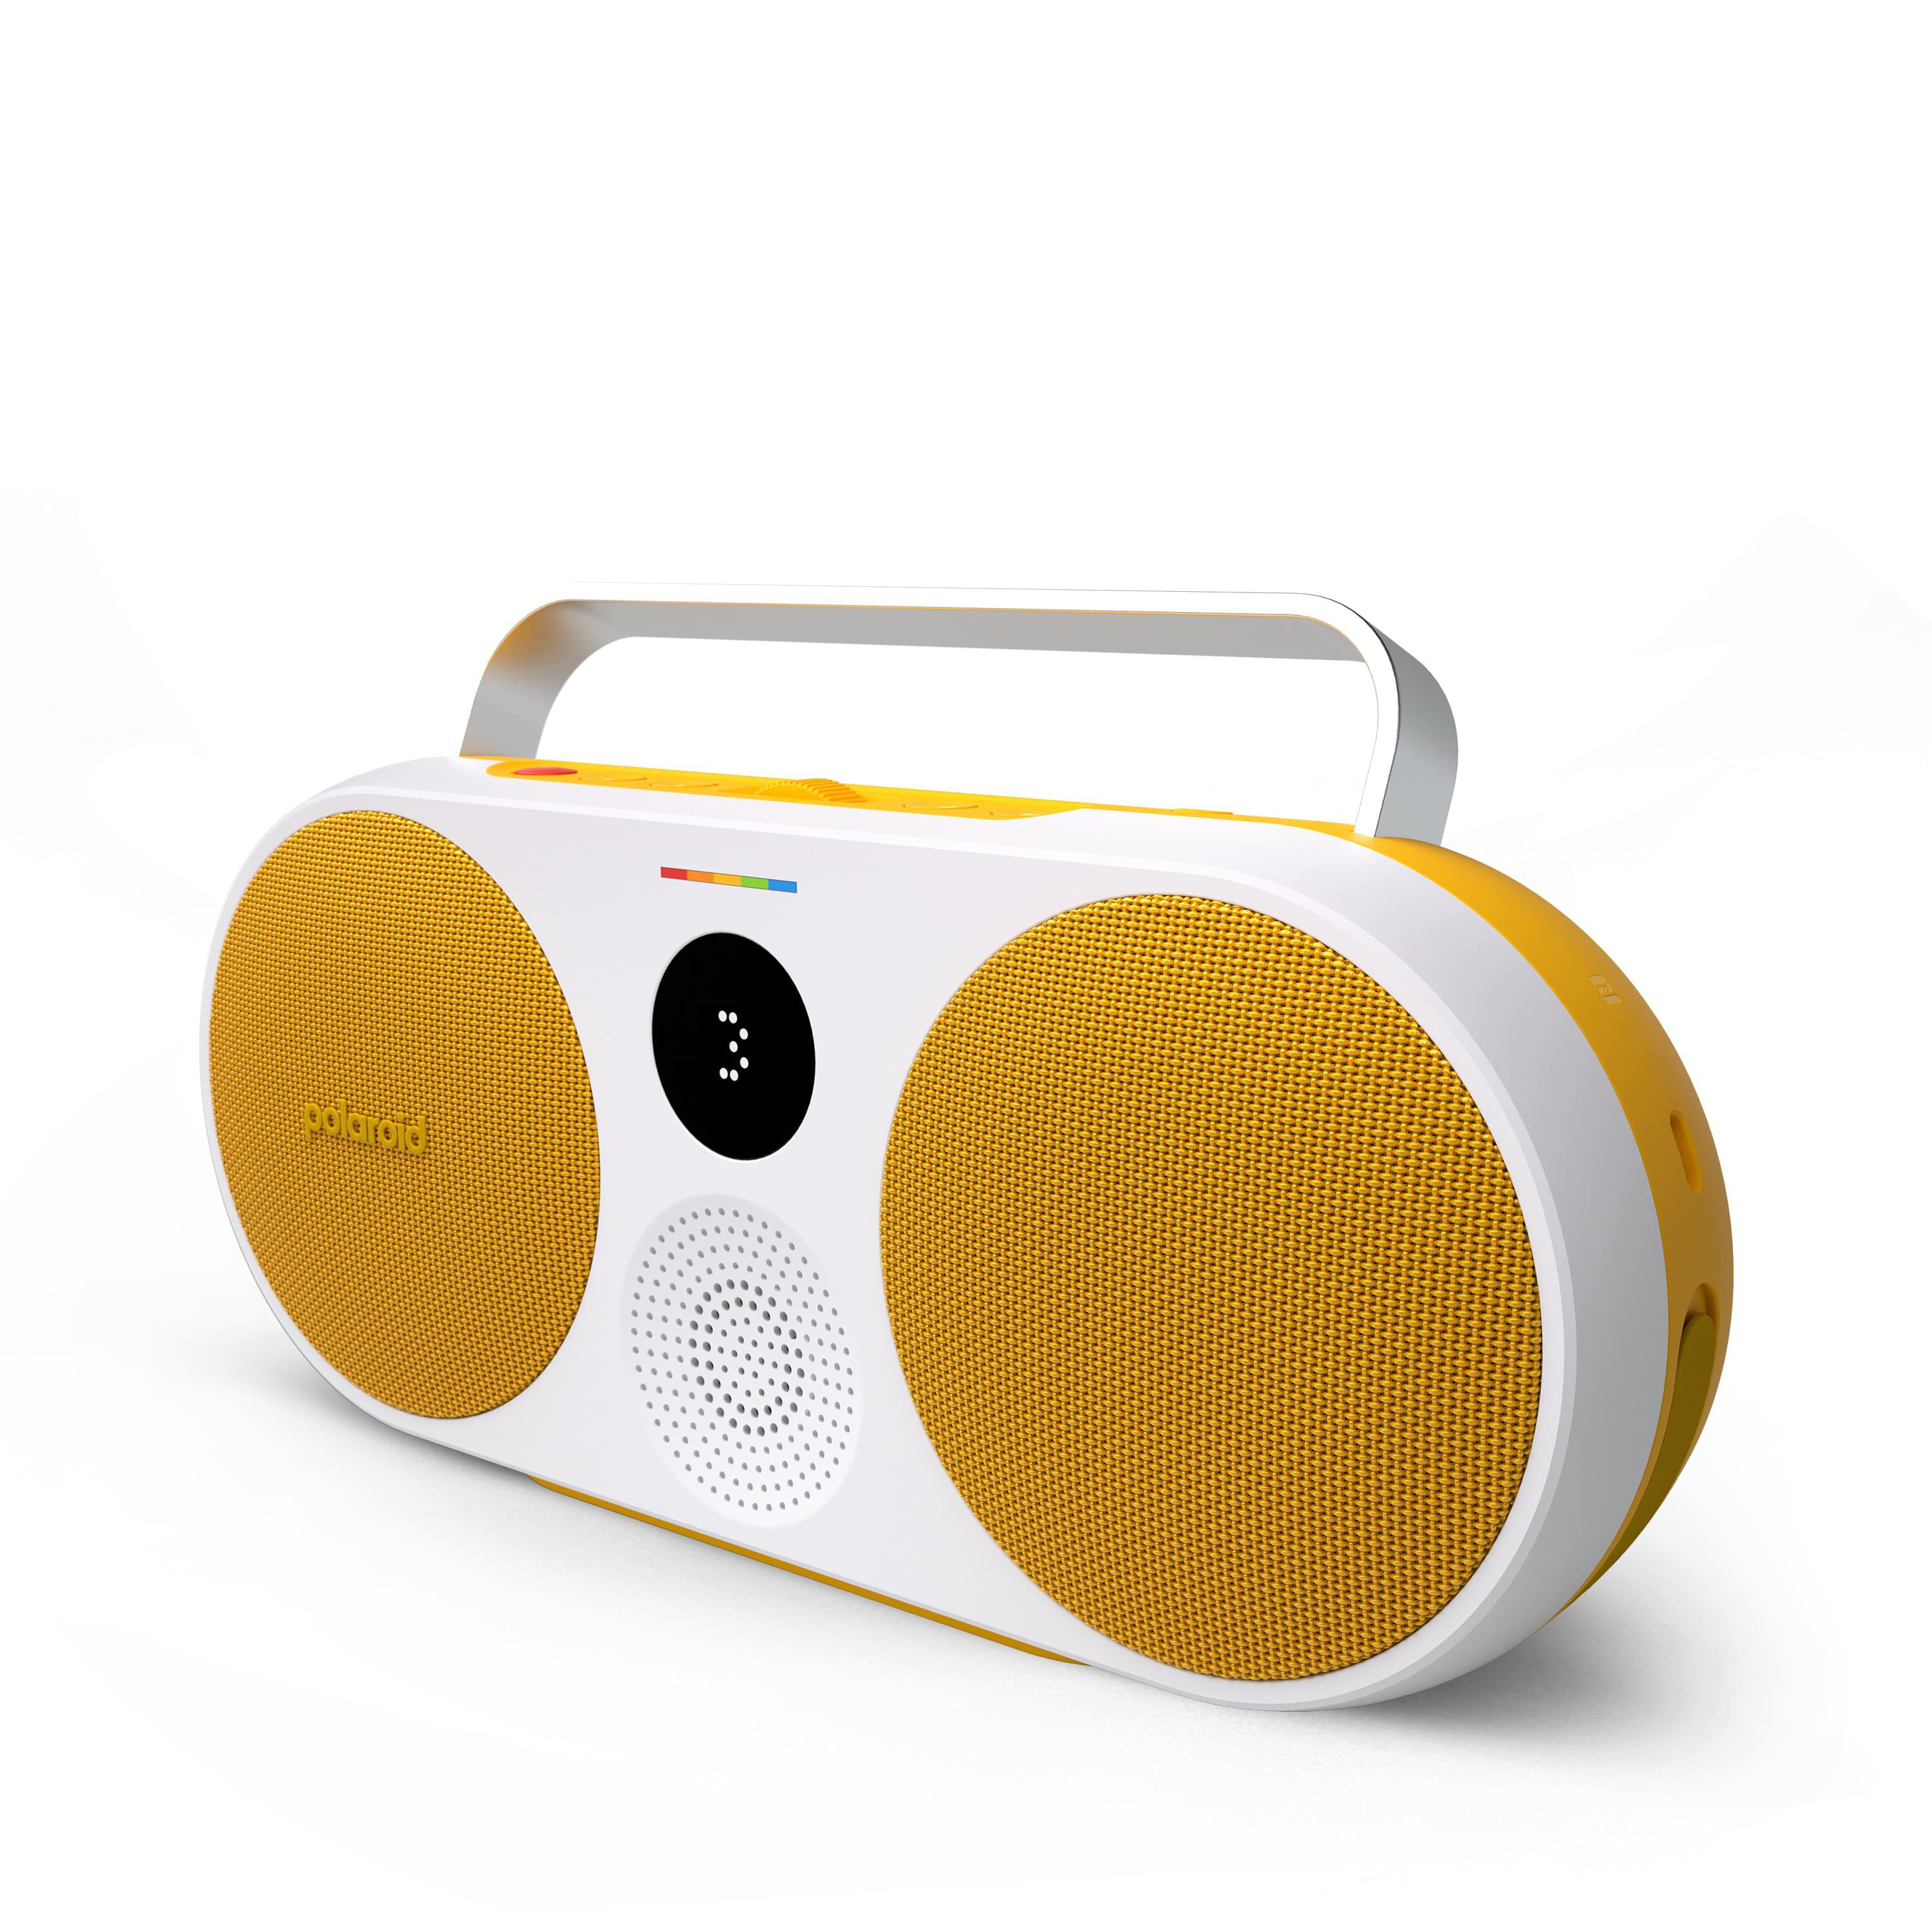 POLAROID P3 Bluetooth , Lautsprecher Music Player Gelb/Weiß